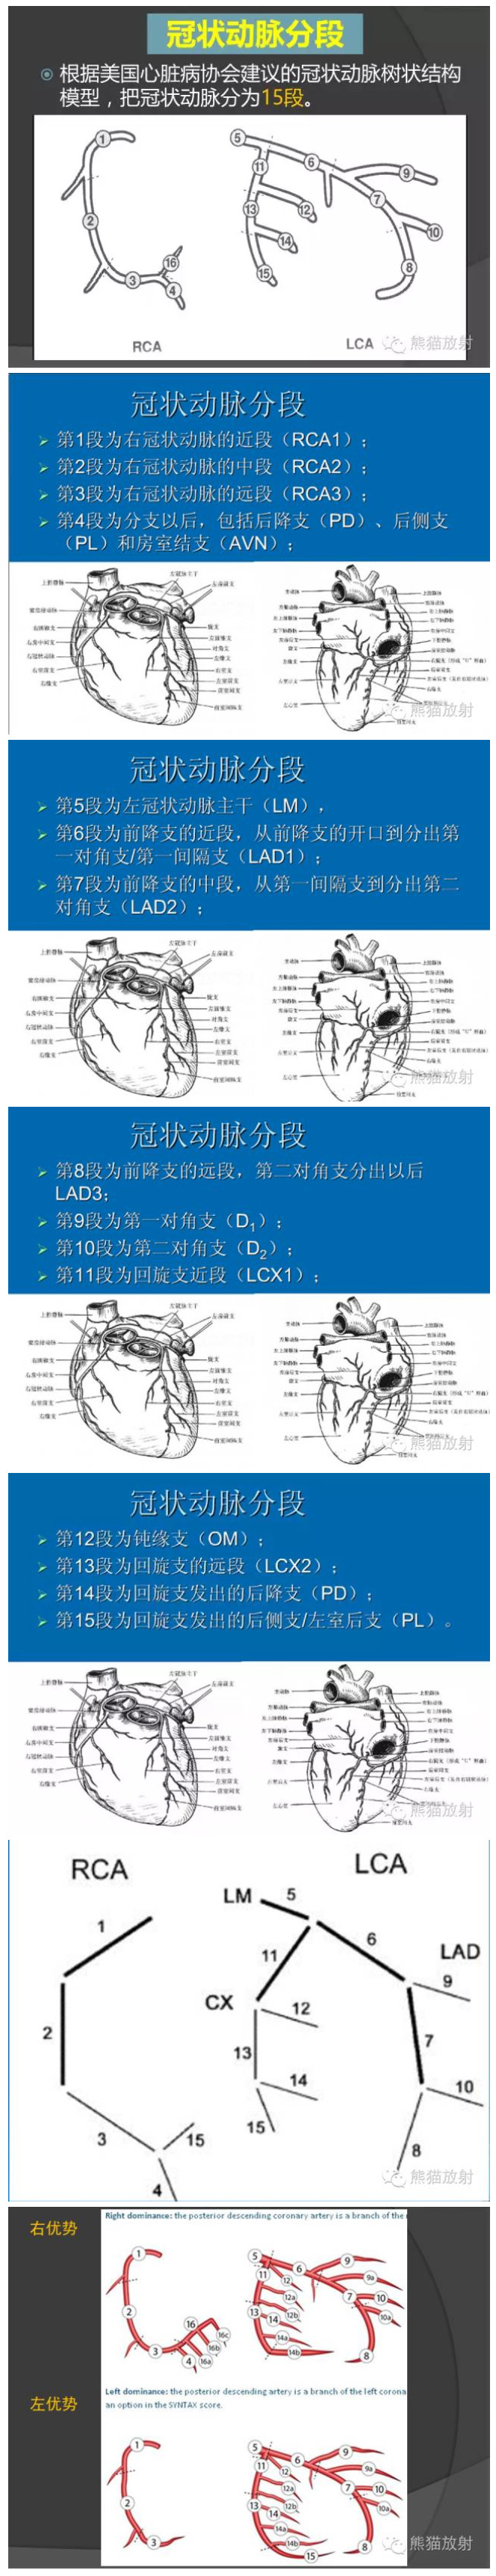 冠脉分段示意图图片